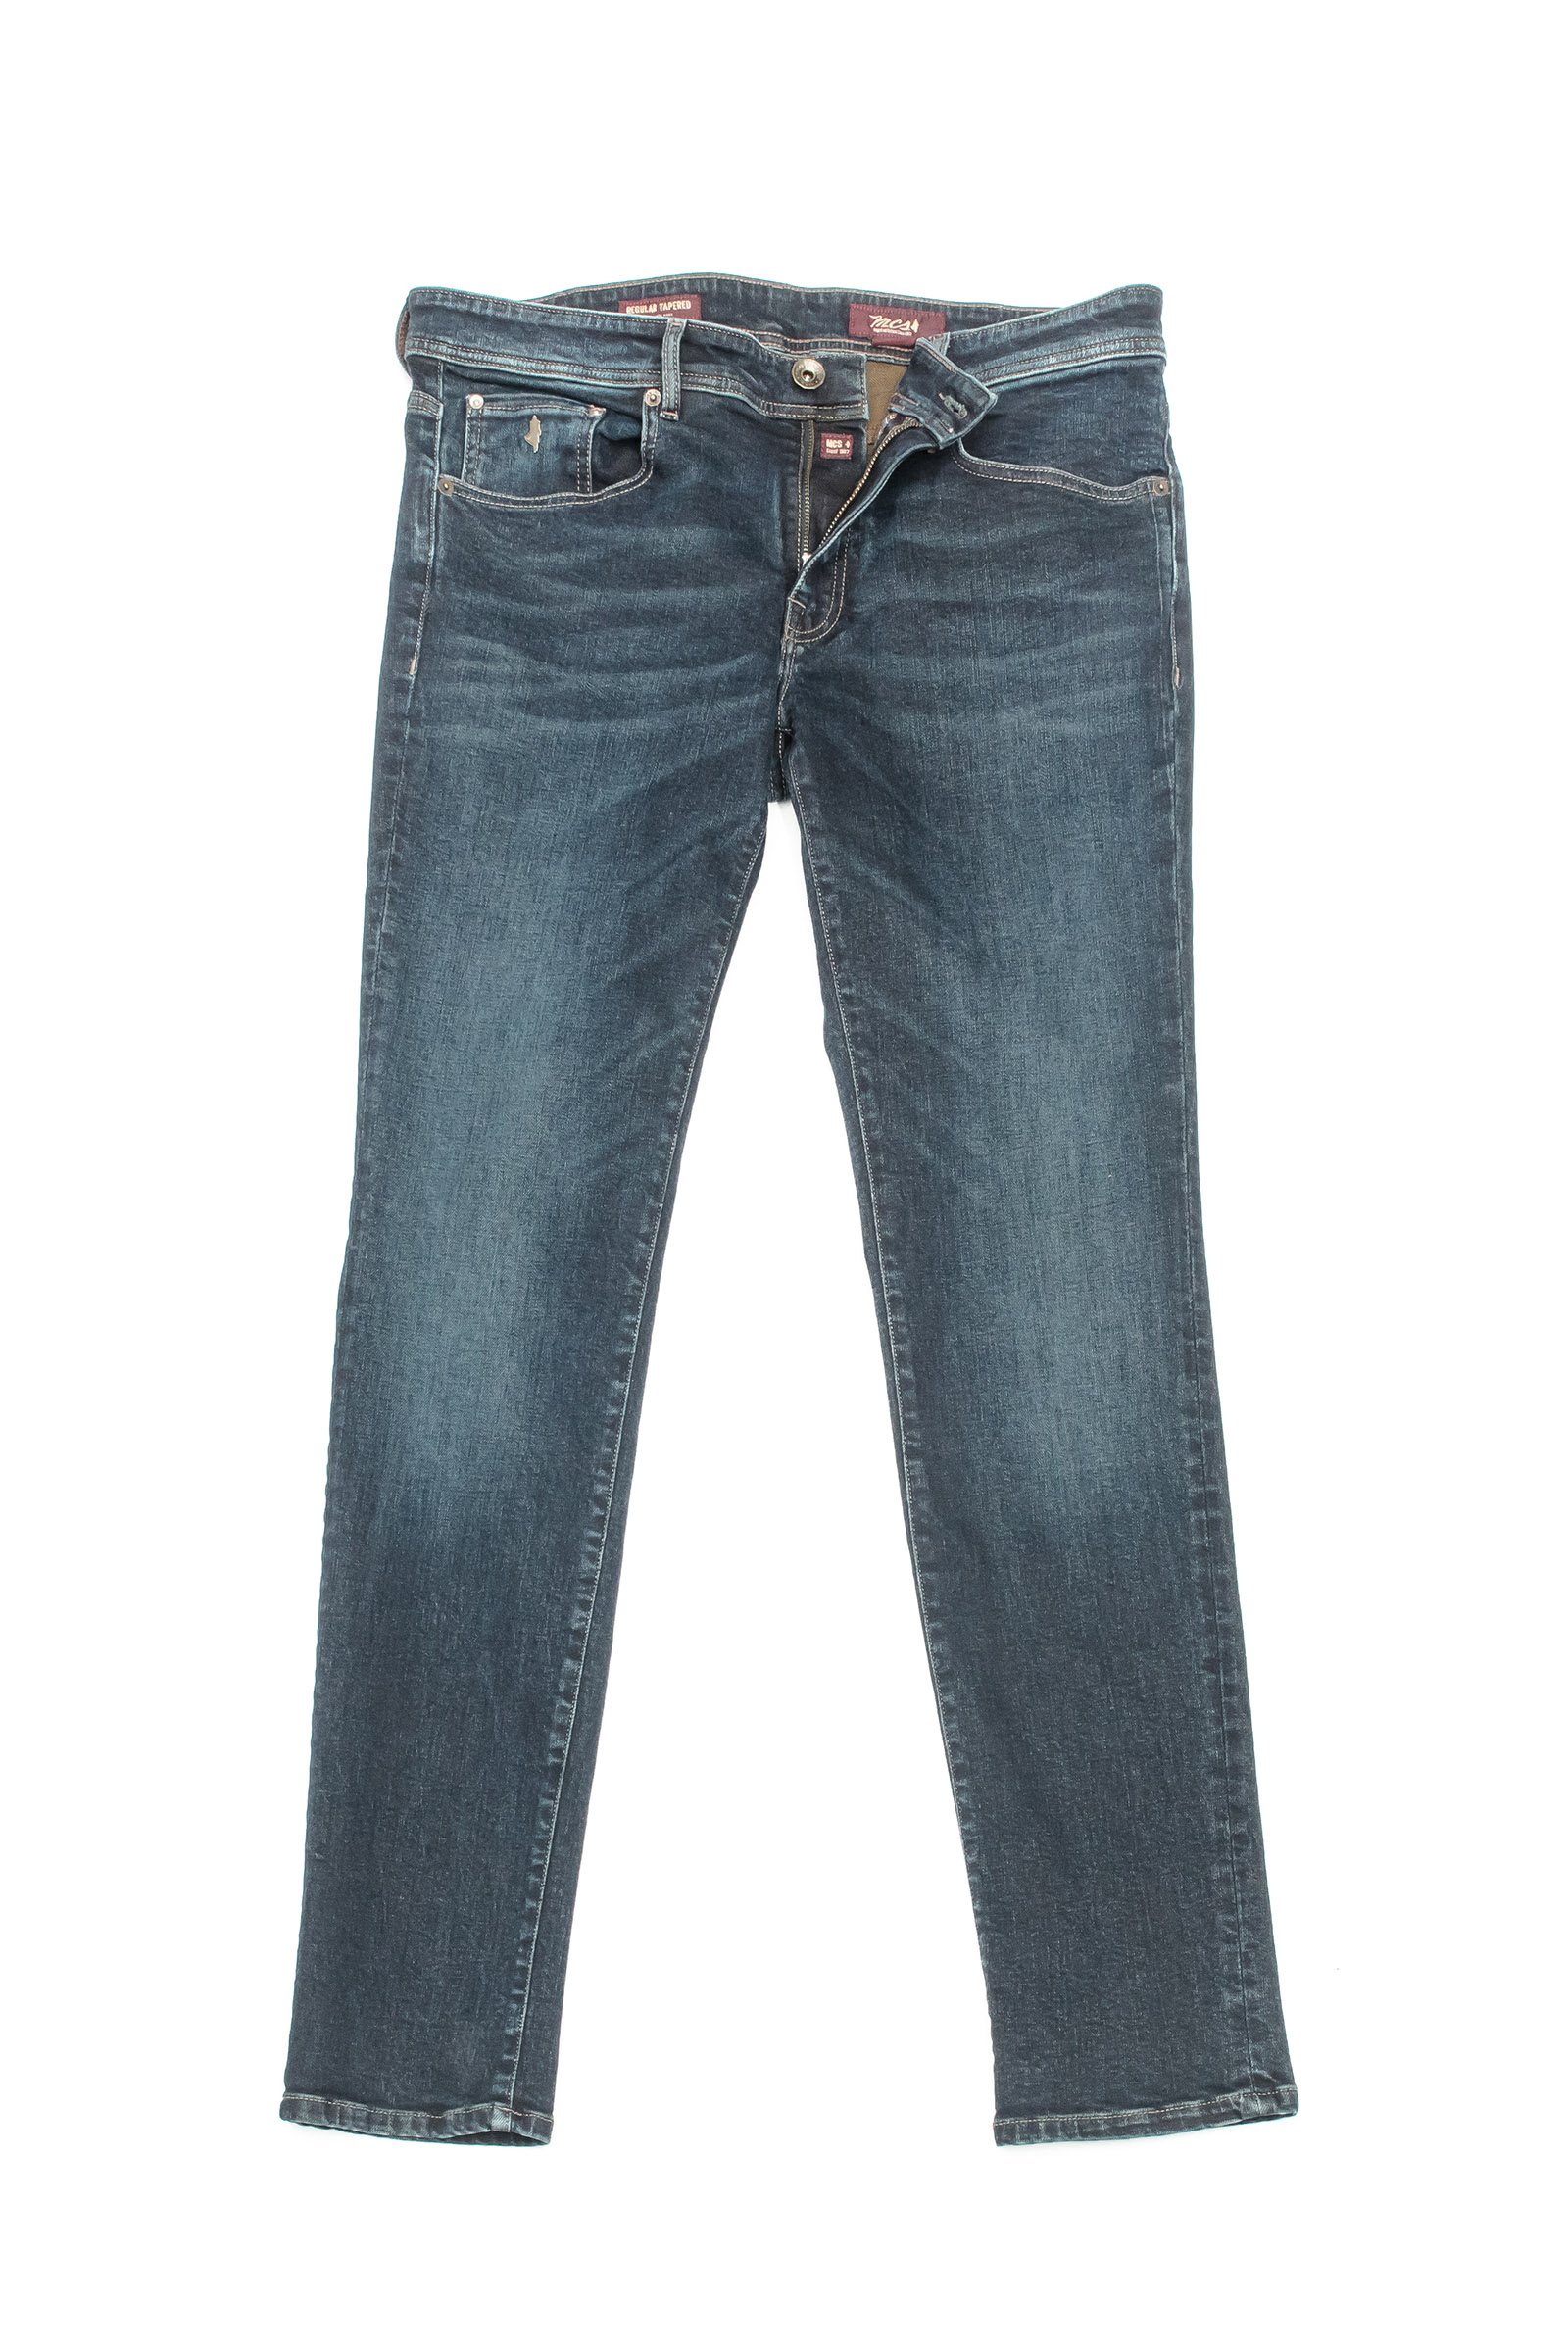 Regular Tapered blue brown jeans - MCS Men